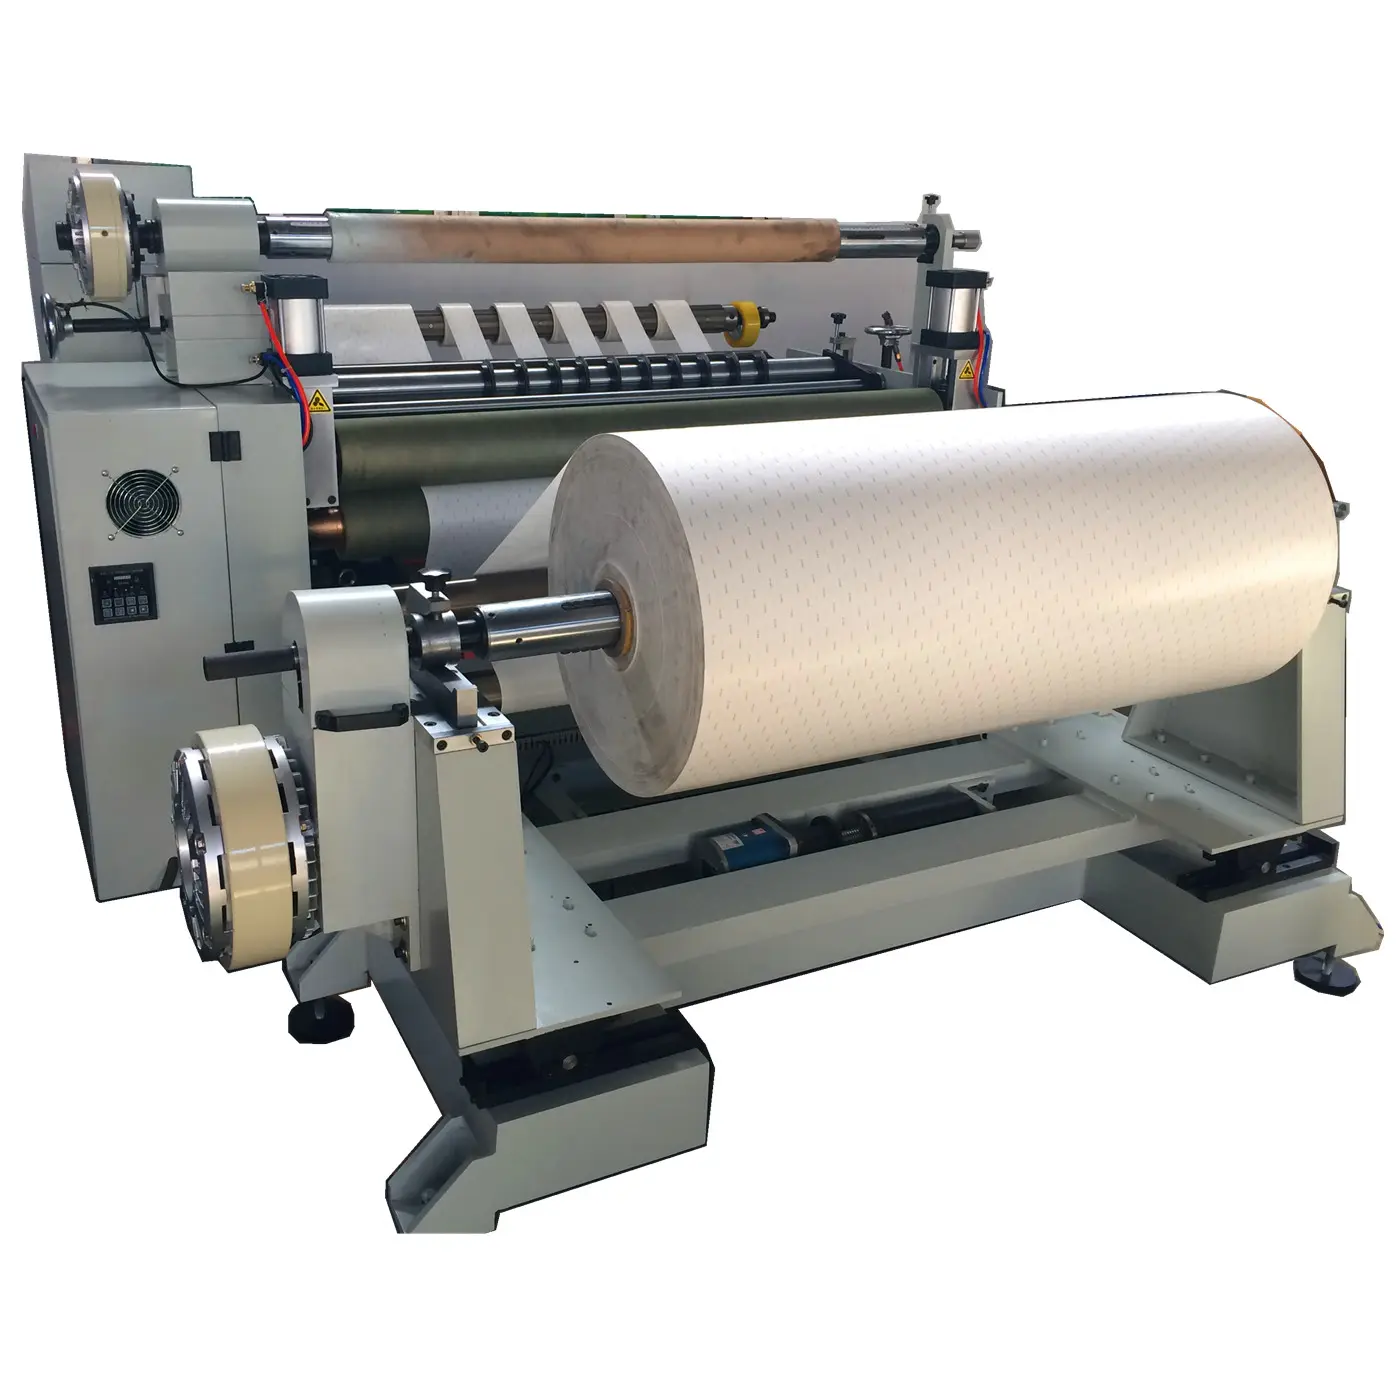 Dilme sarıcı eğme makineleri kağıt kesme yapışkan bant dilme ve sarma 100 m/dak üretim kapasitesi